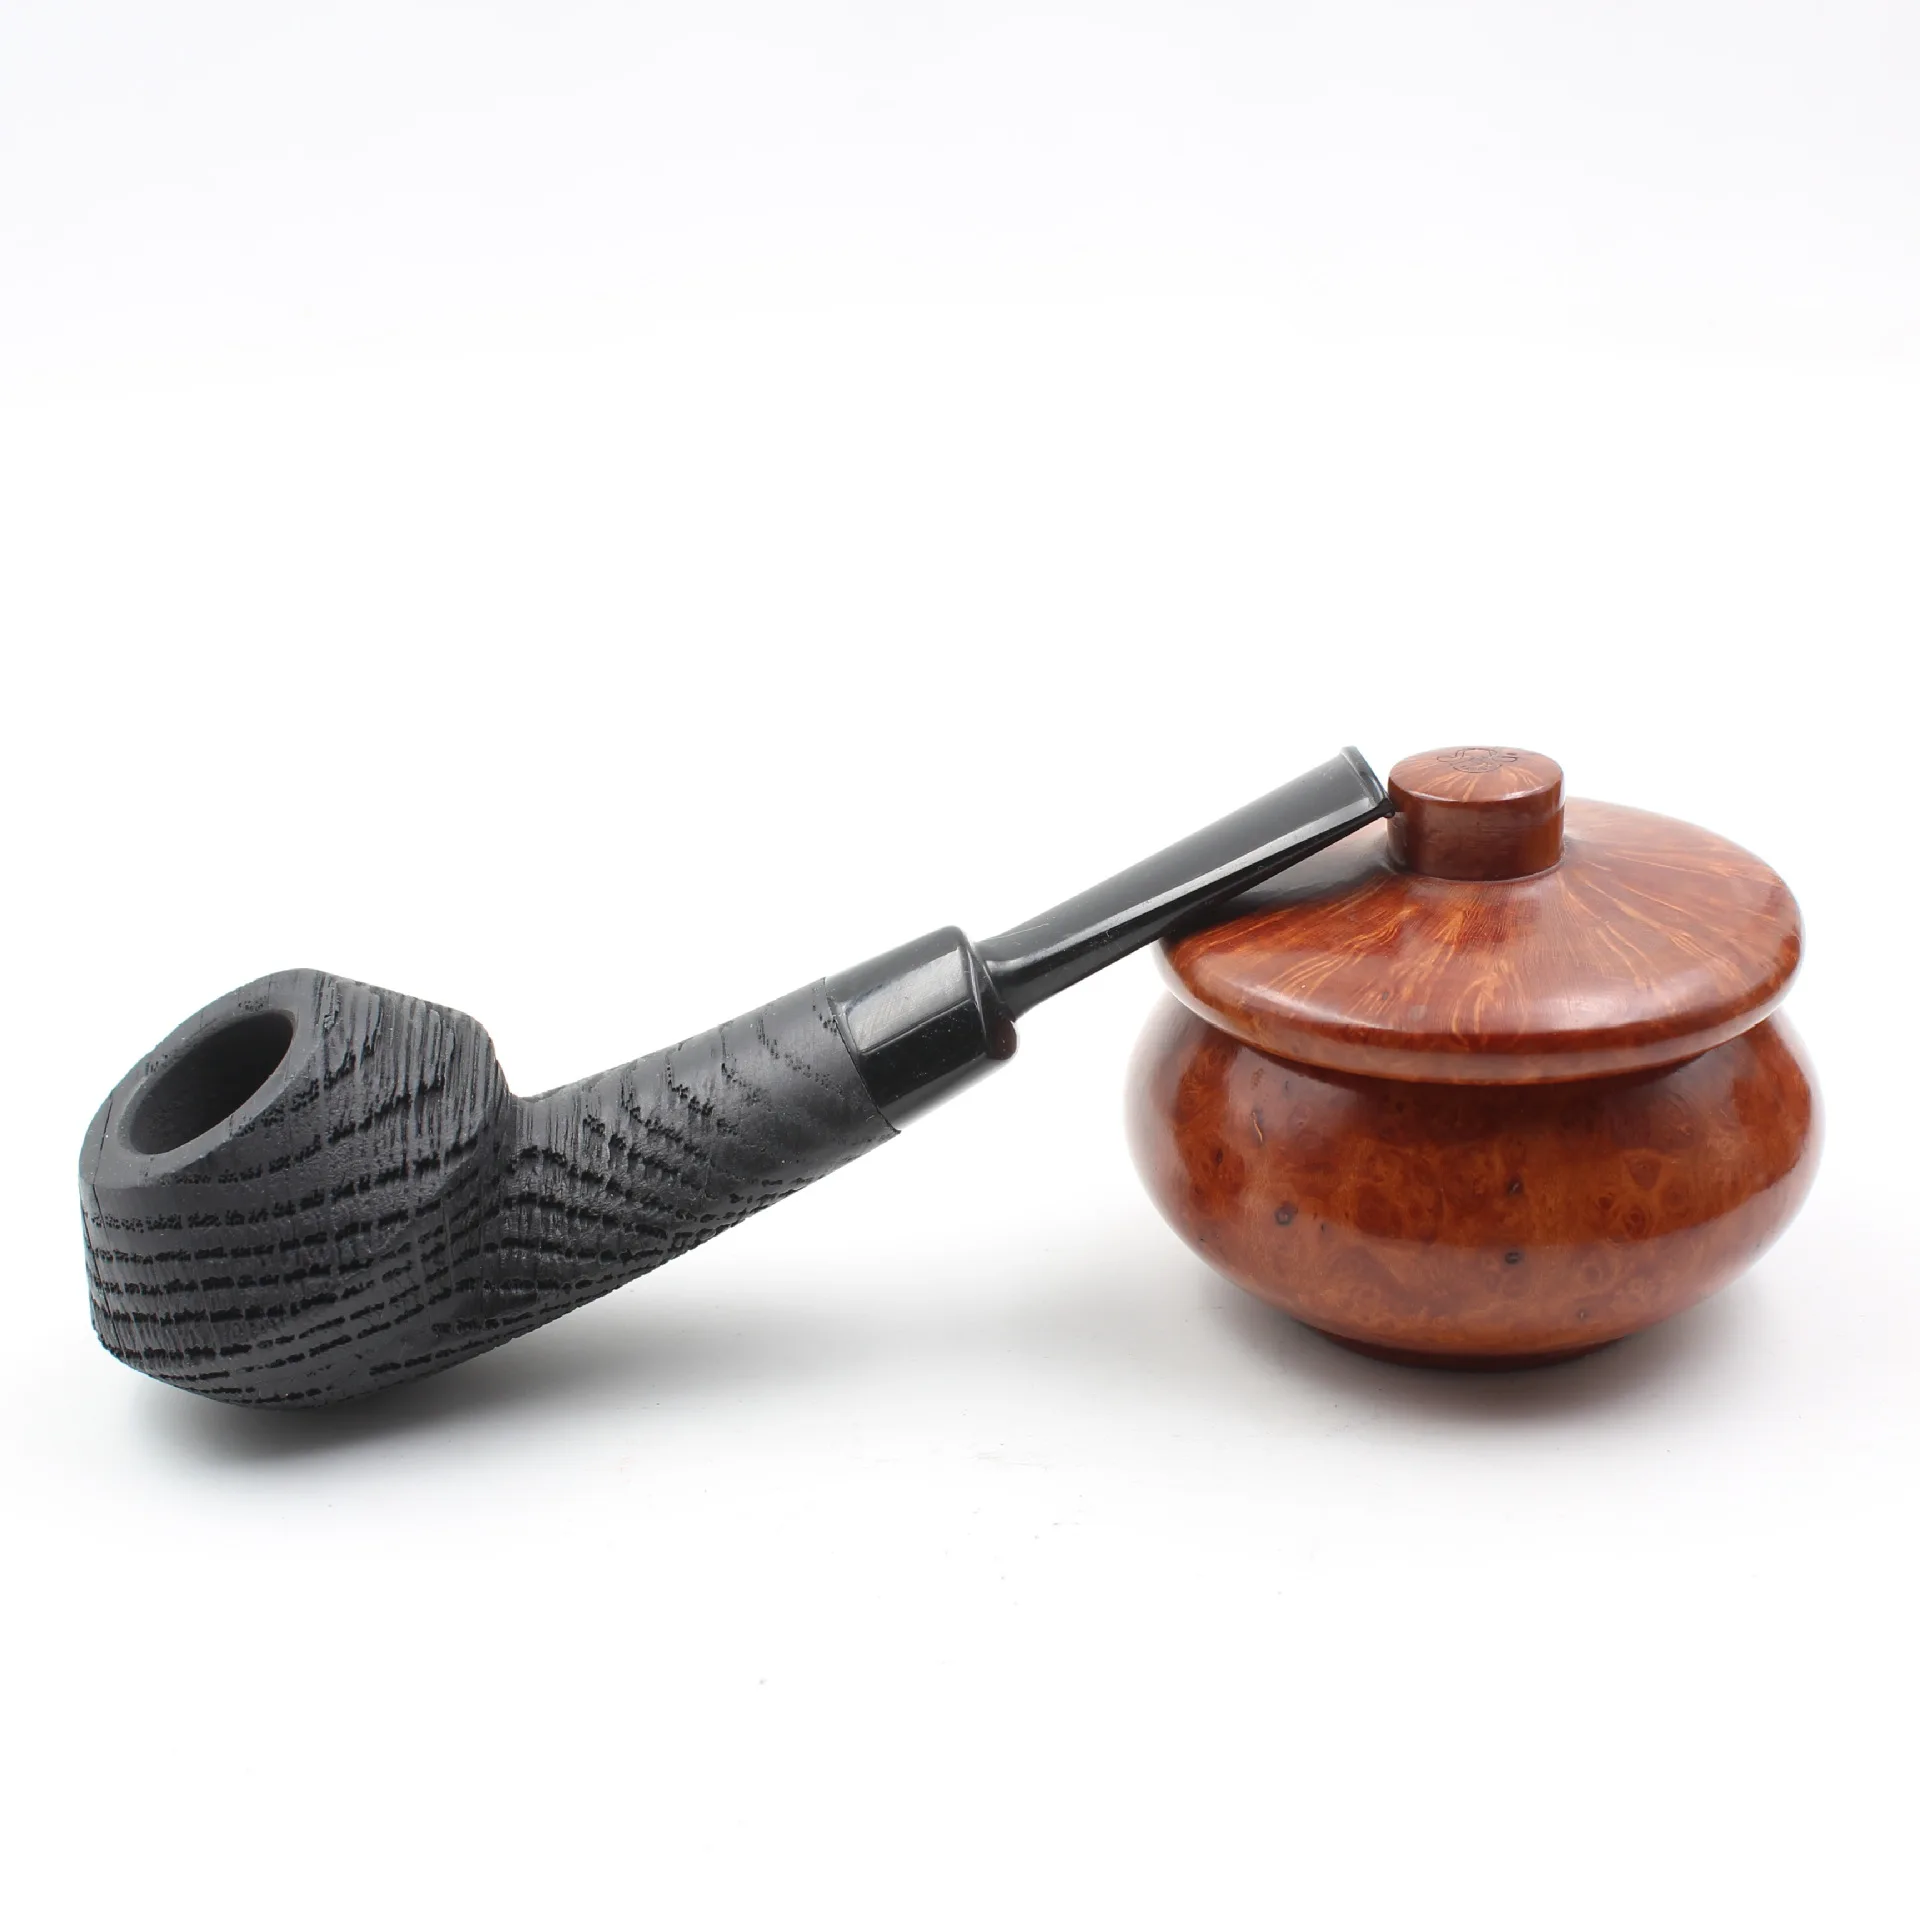 

Дубовая деревянная трубка с фильтром 3 мм, трубка для табака в стиле ретро, для джентльмена, изогнутого типа, трубка для курения ручной работы с аксессуаром, подарок для пожилых людей